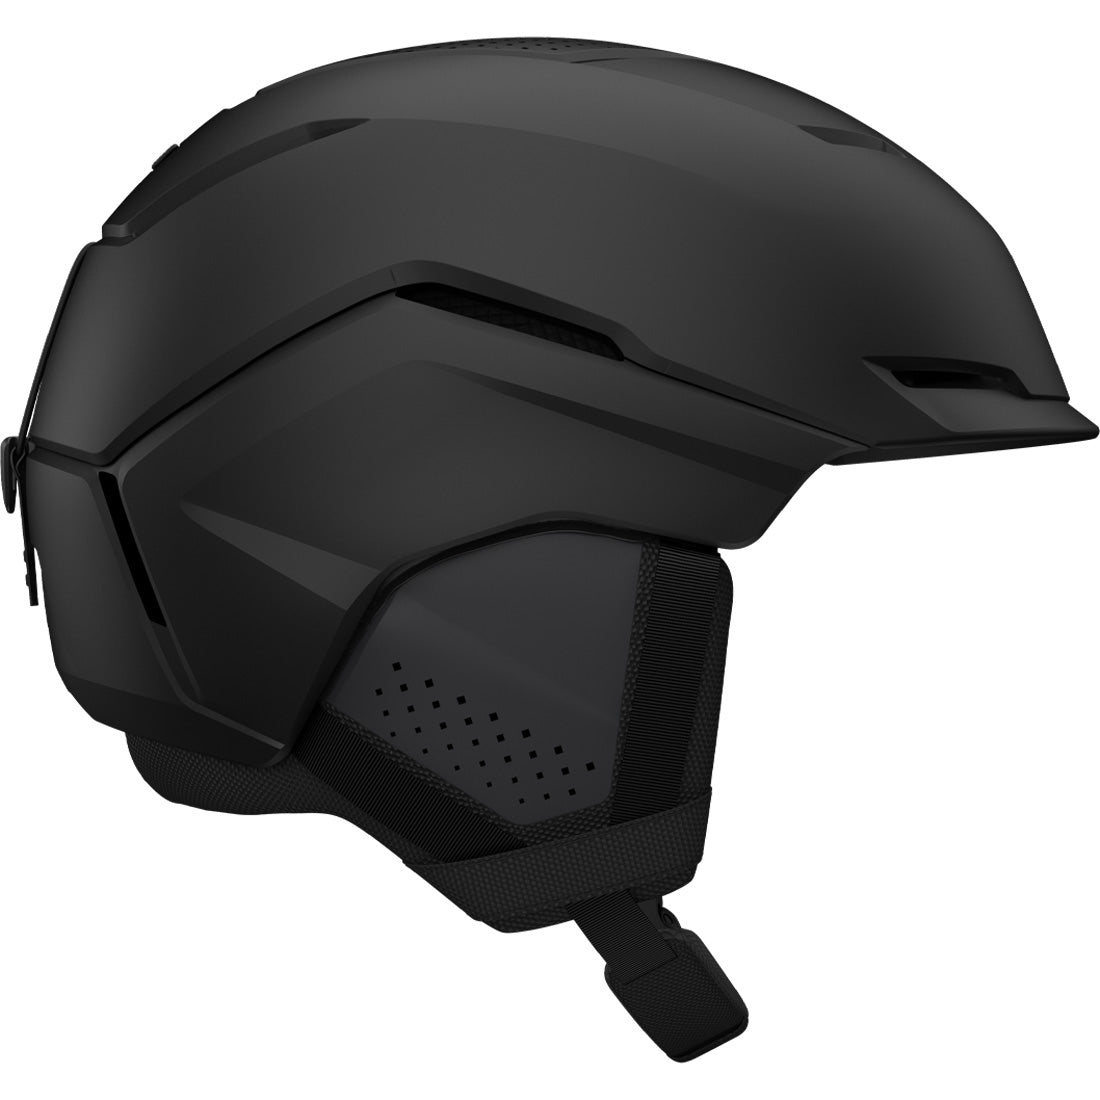 Giro Tenet MIPS Helmet - Men's